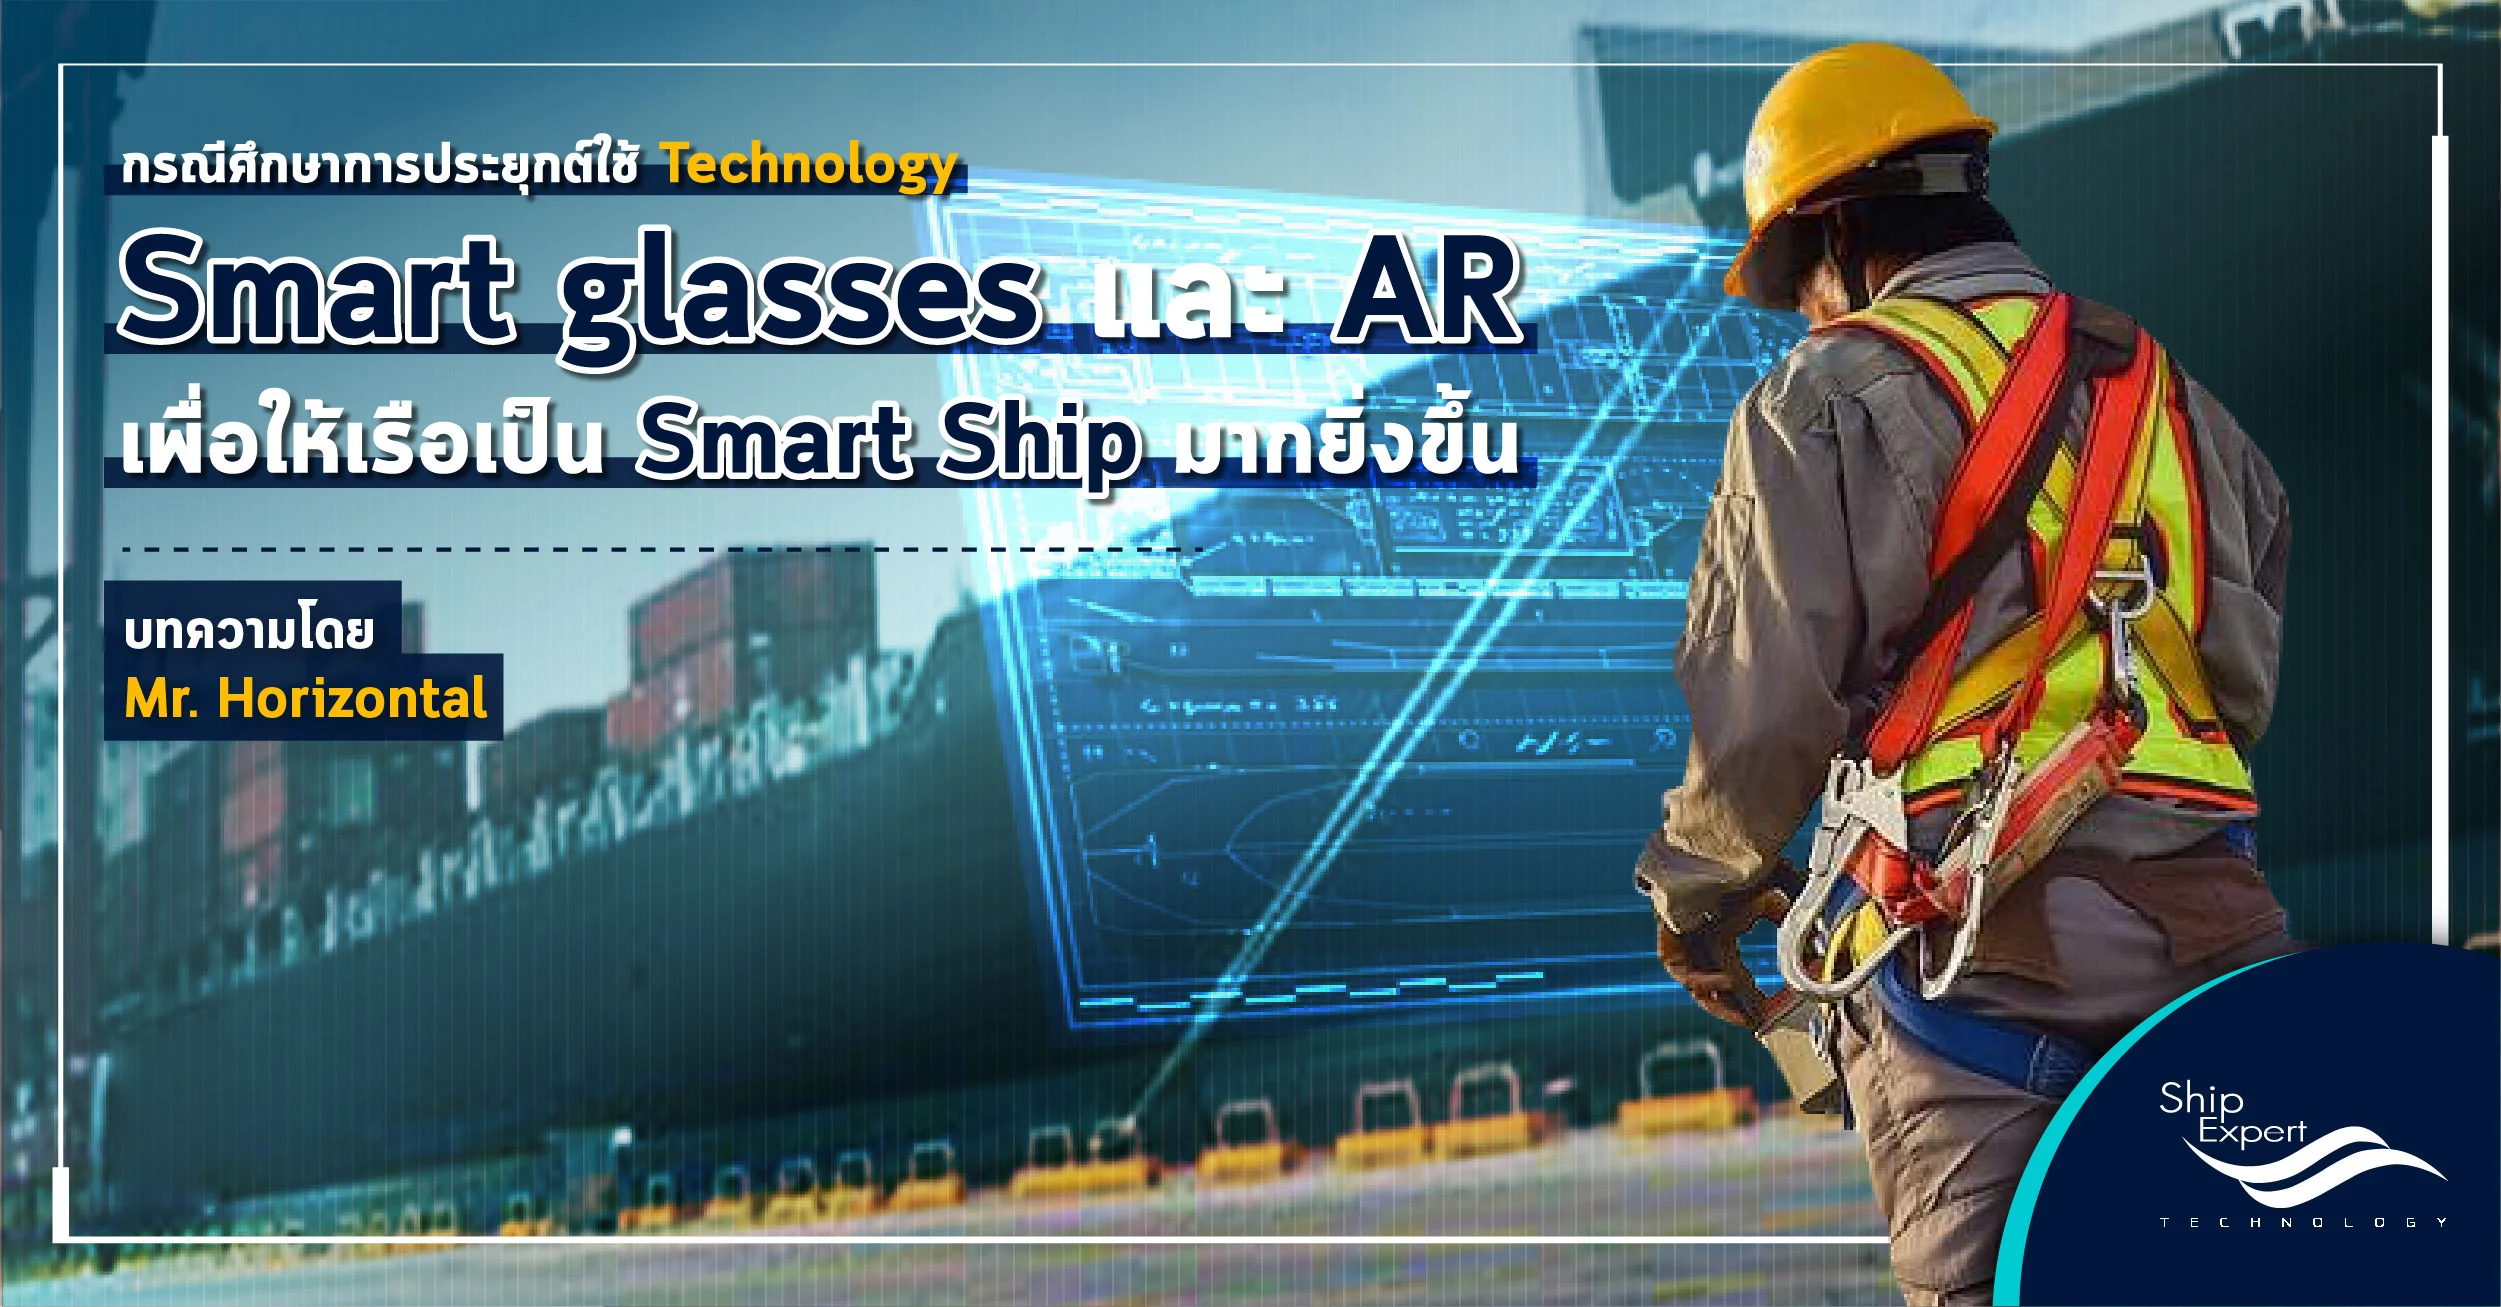 การประยุกต์ใช้ Technology Smart glasses และ AR เพื่อให้เรือเป็น Smart Ship มากยิ่งขึ้น